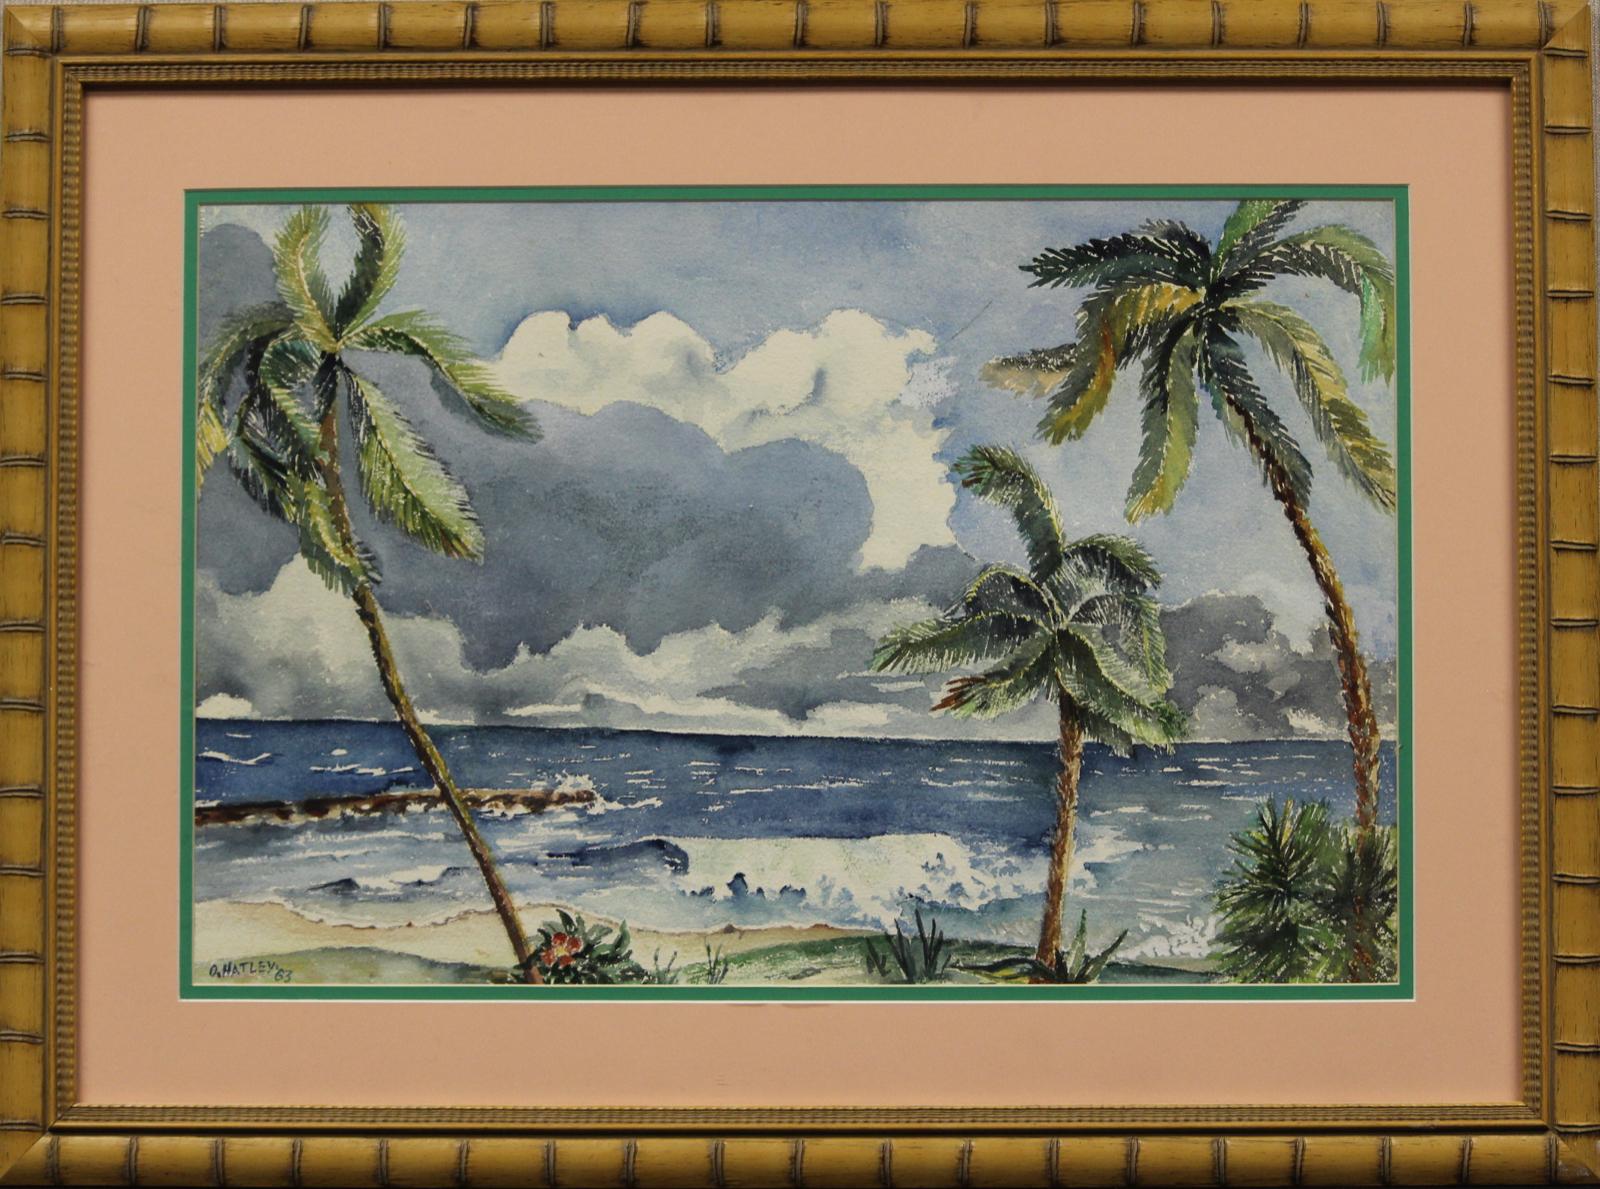 O. Hartley Landscape Art - "Barbados"